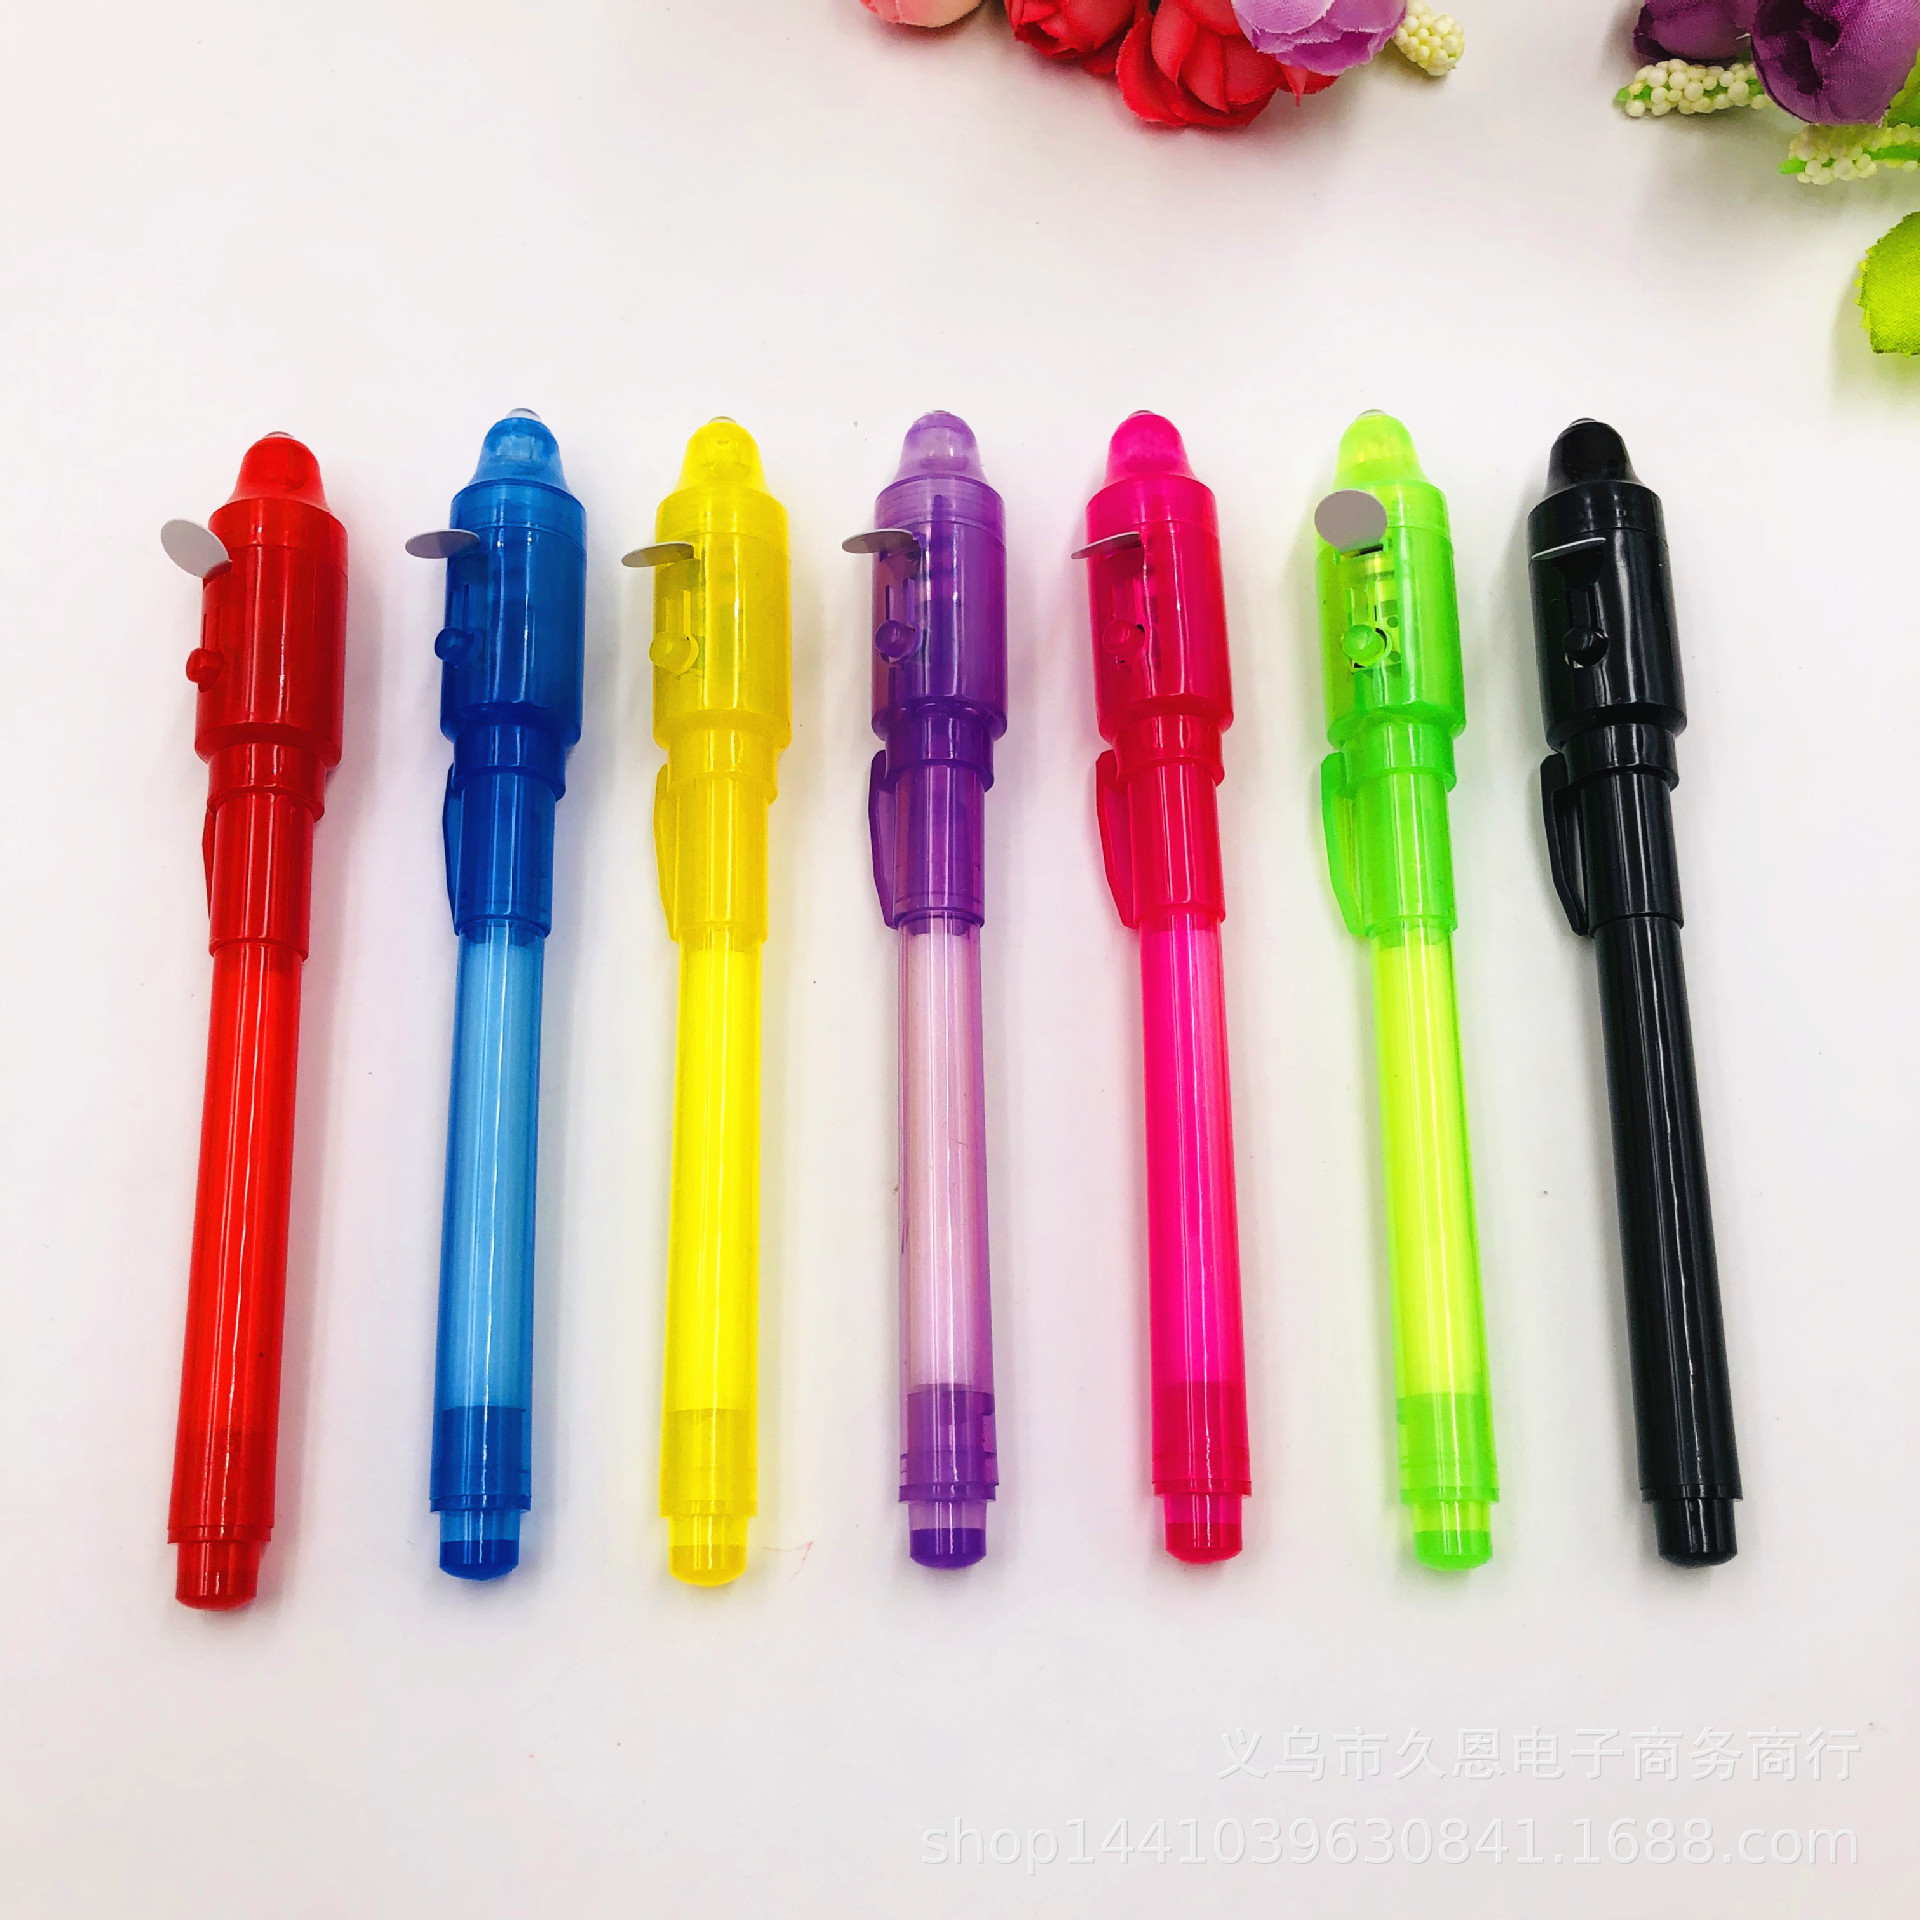 紫外线环保验钞笔魔术隐形保密笔UV笔多功能塑料大头笔亚马逊爆款